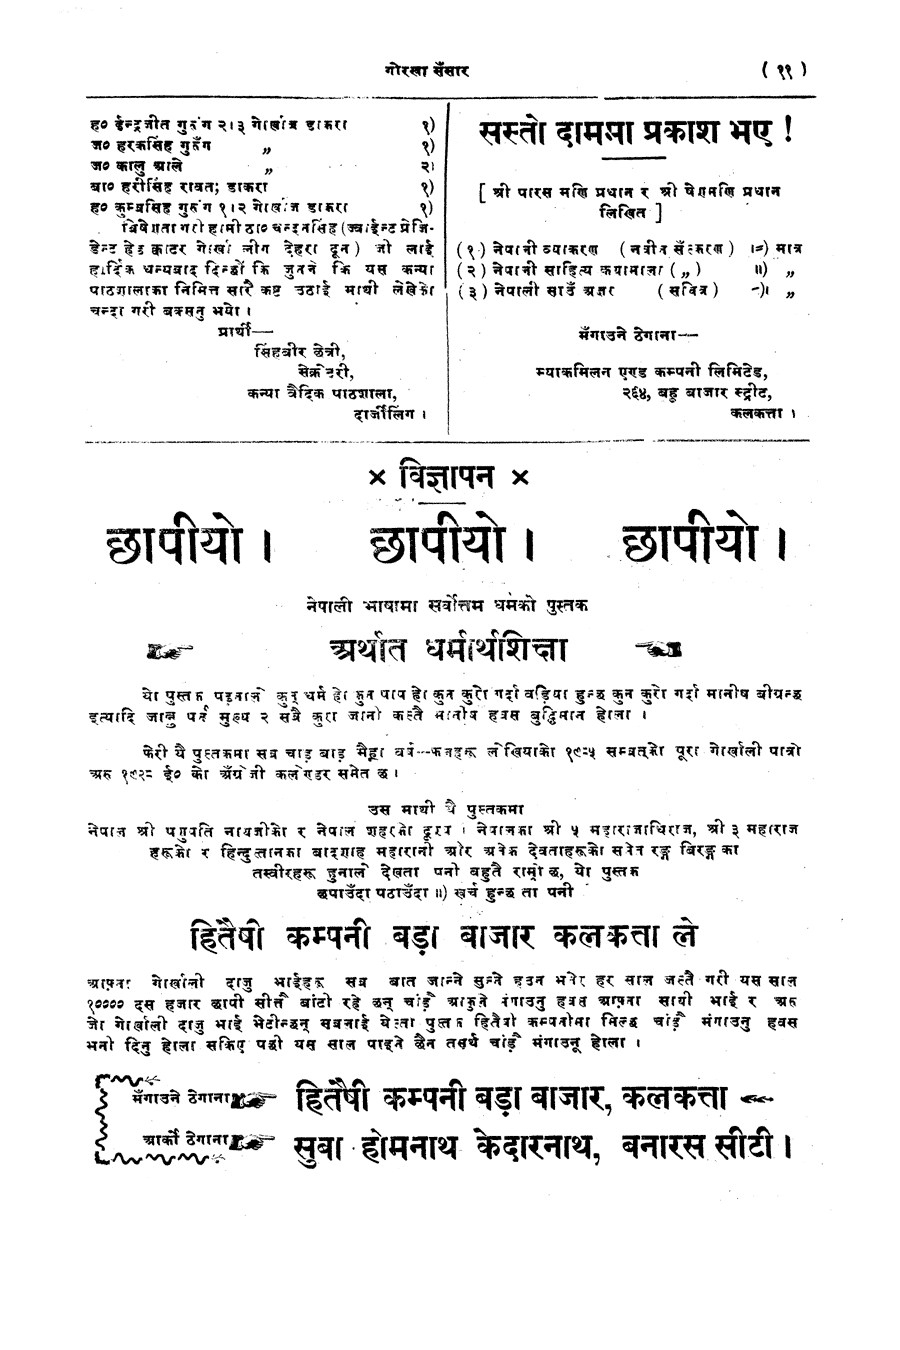 Gorkha Sansar, 28 Feb 1928, page 11